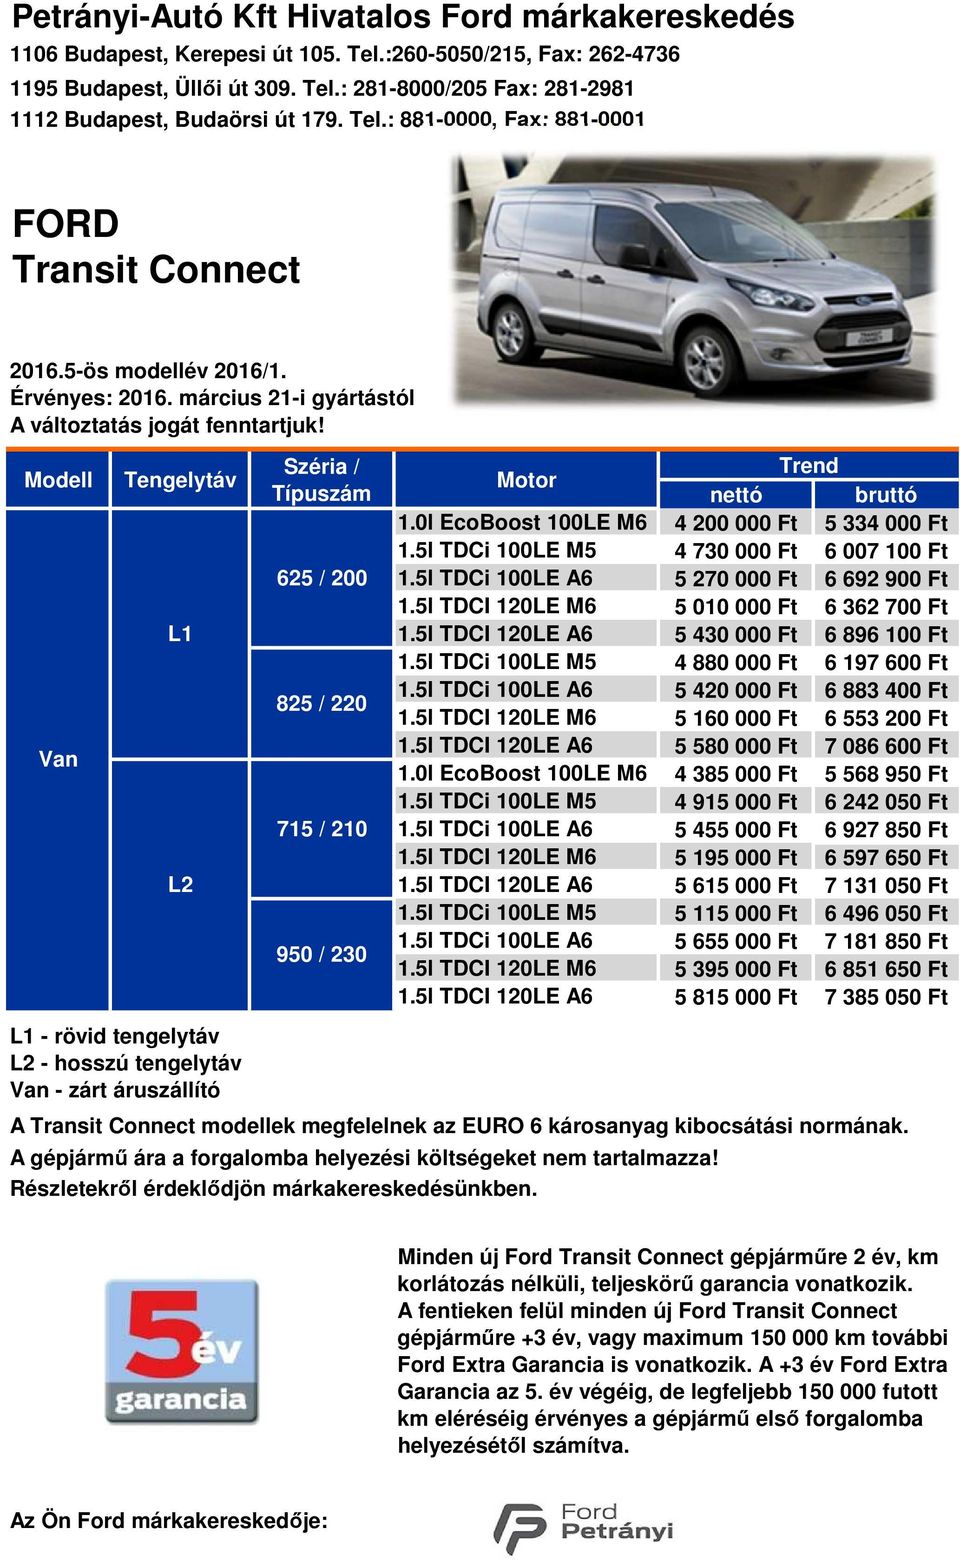 / 230 Motor 1.0l EcoBoost 100LE M6 1.0l EcoBoost 100LE M6 A gépjármű ára a forgalomba helyezési költségeket nem tartalmazza! Részletekről érdeklődjön márkakereskedésünkben.